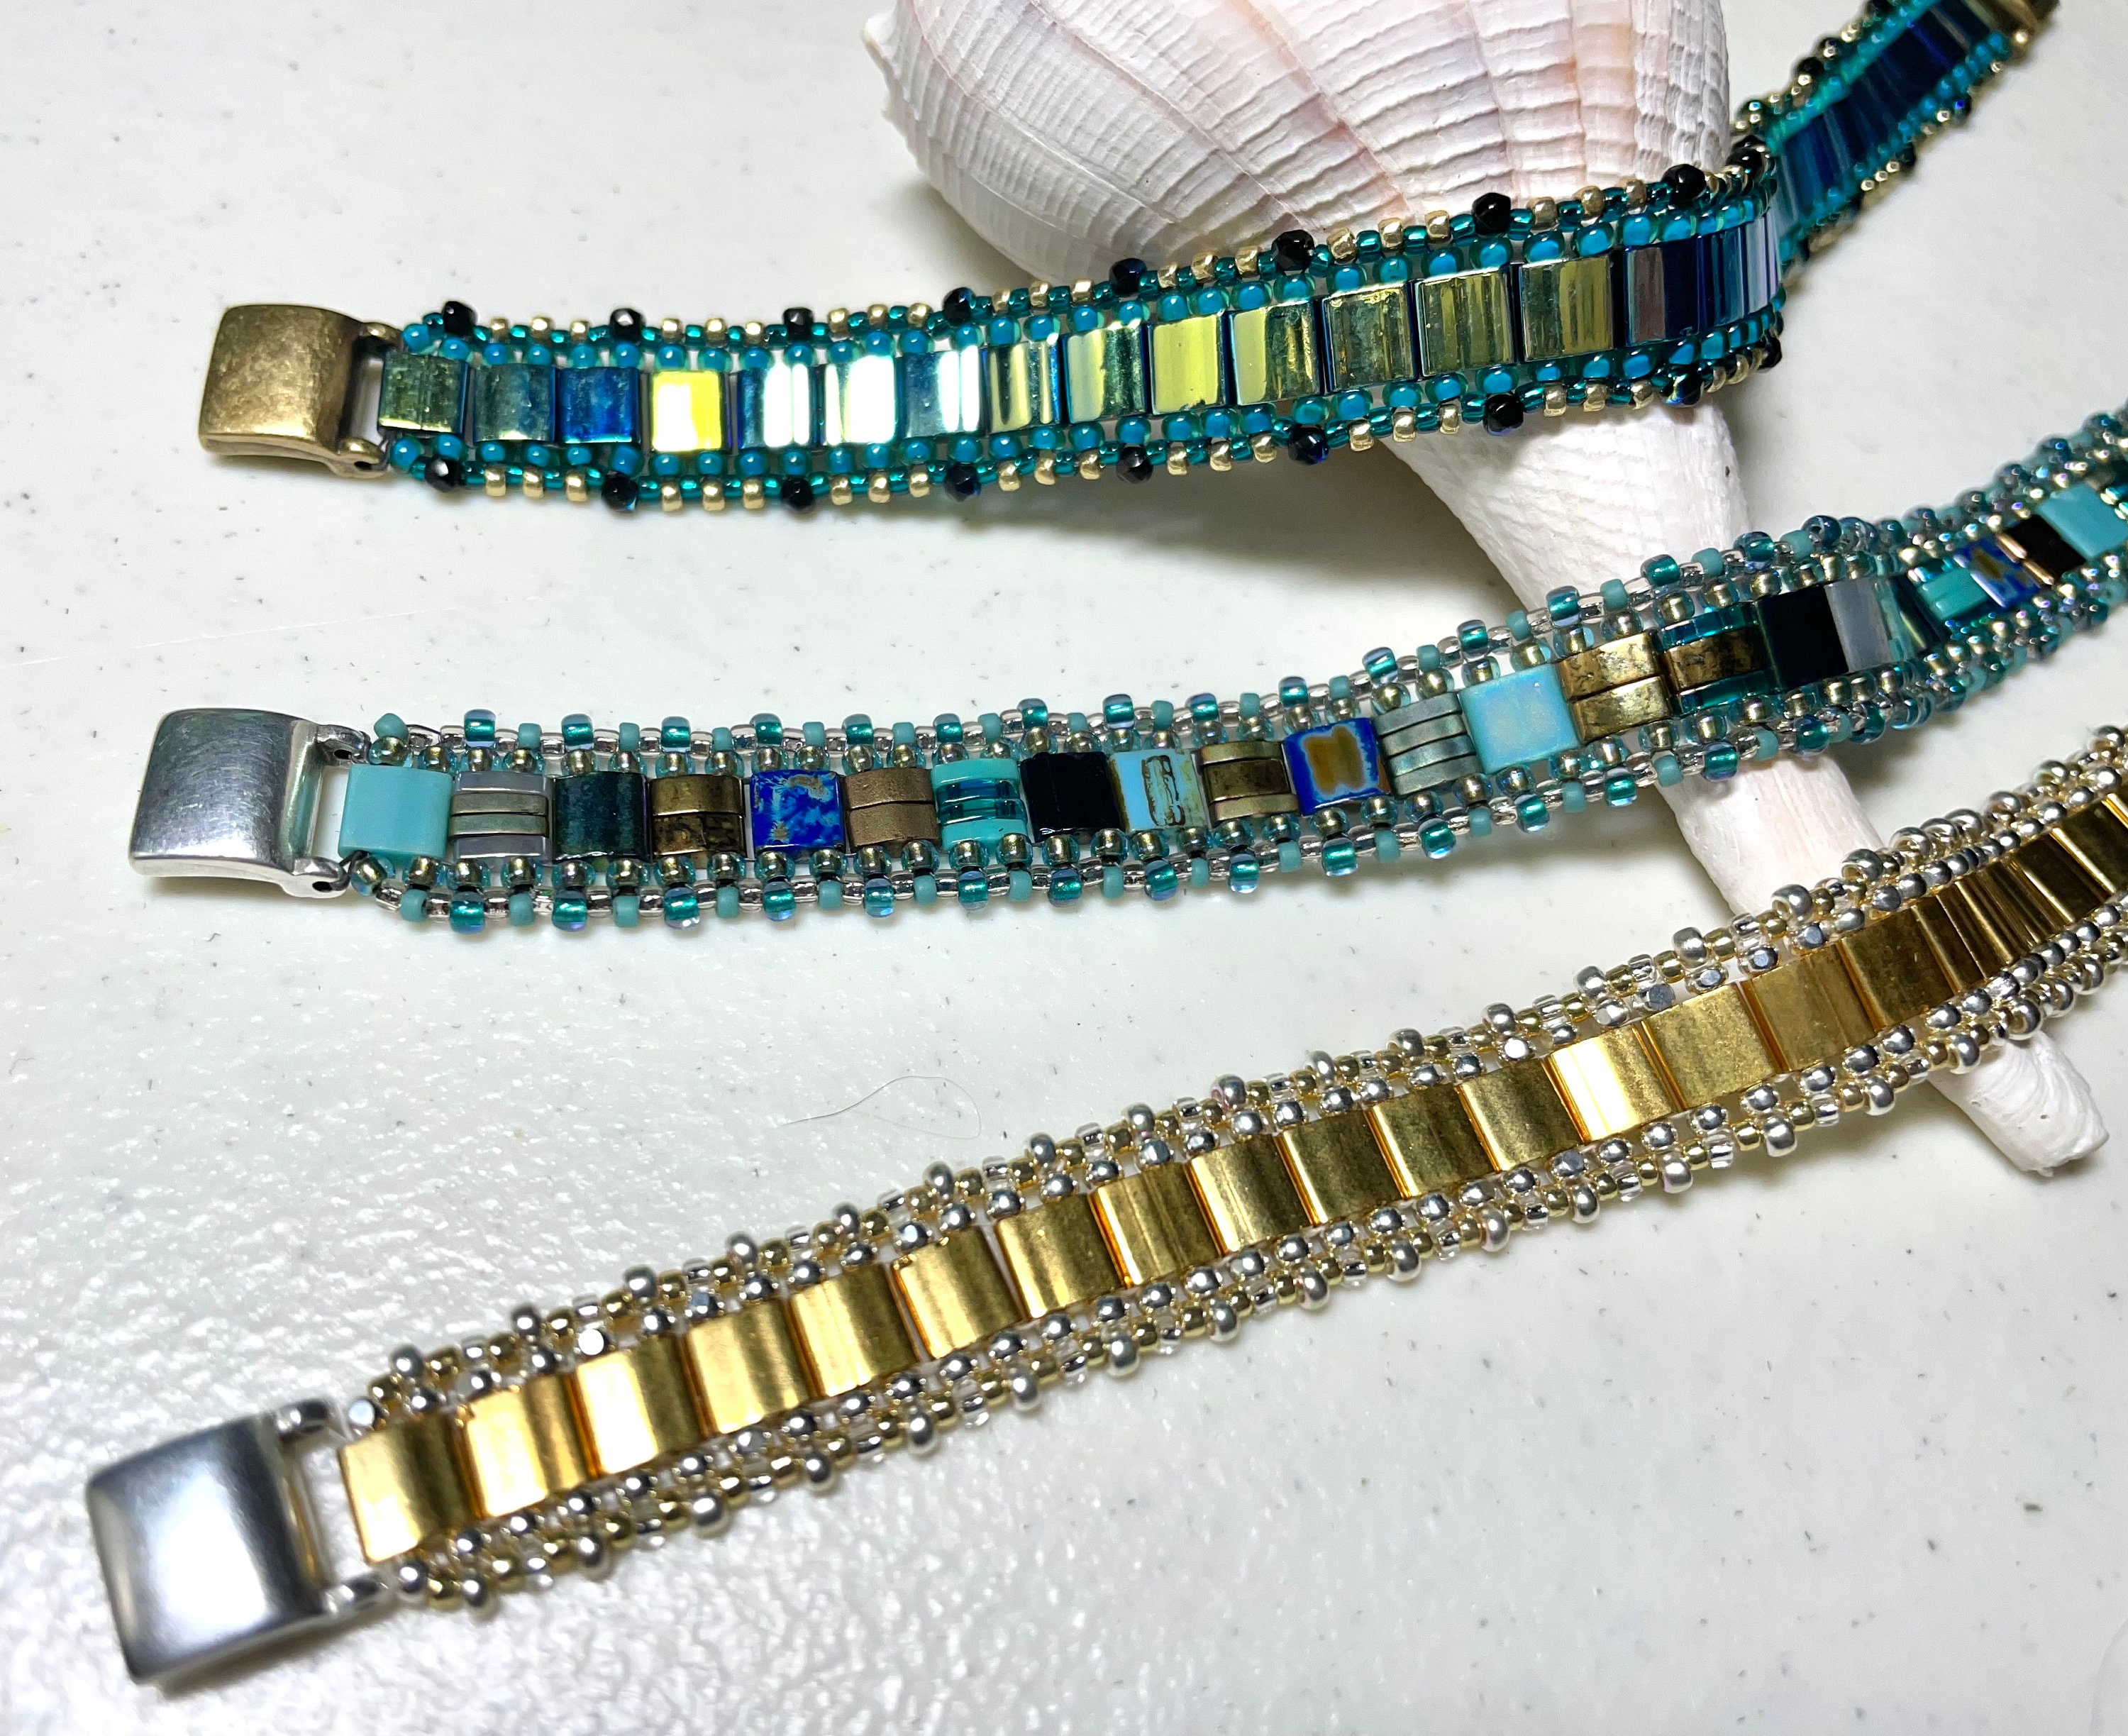 Tila Stackers Bracelet Kit – Heart Beads Jewelry